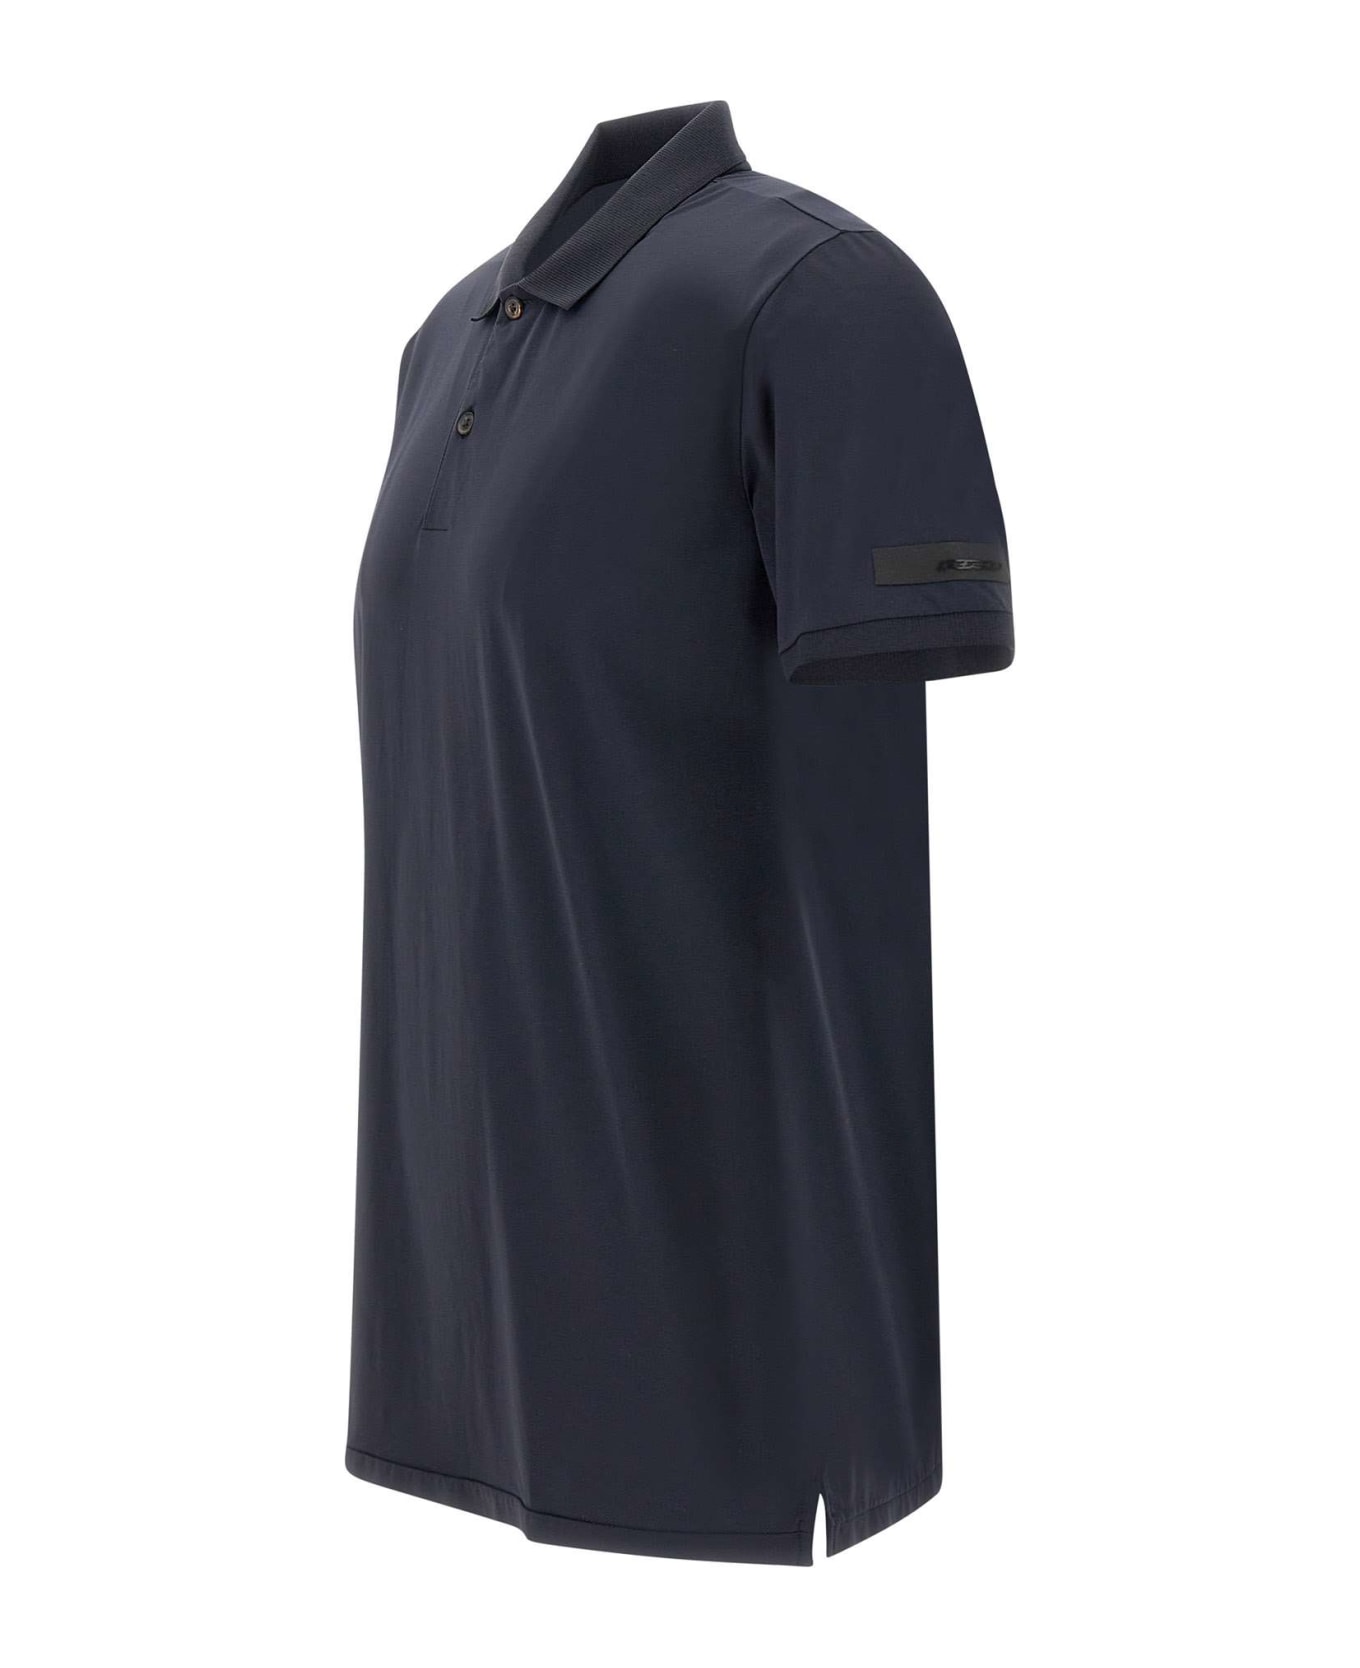 RRD - Roberto Ricci Design 'gdy' Cotton Oxford Polo Shirt - Blue